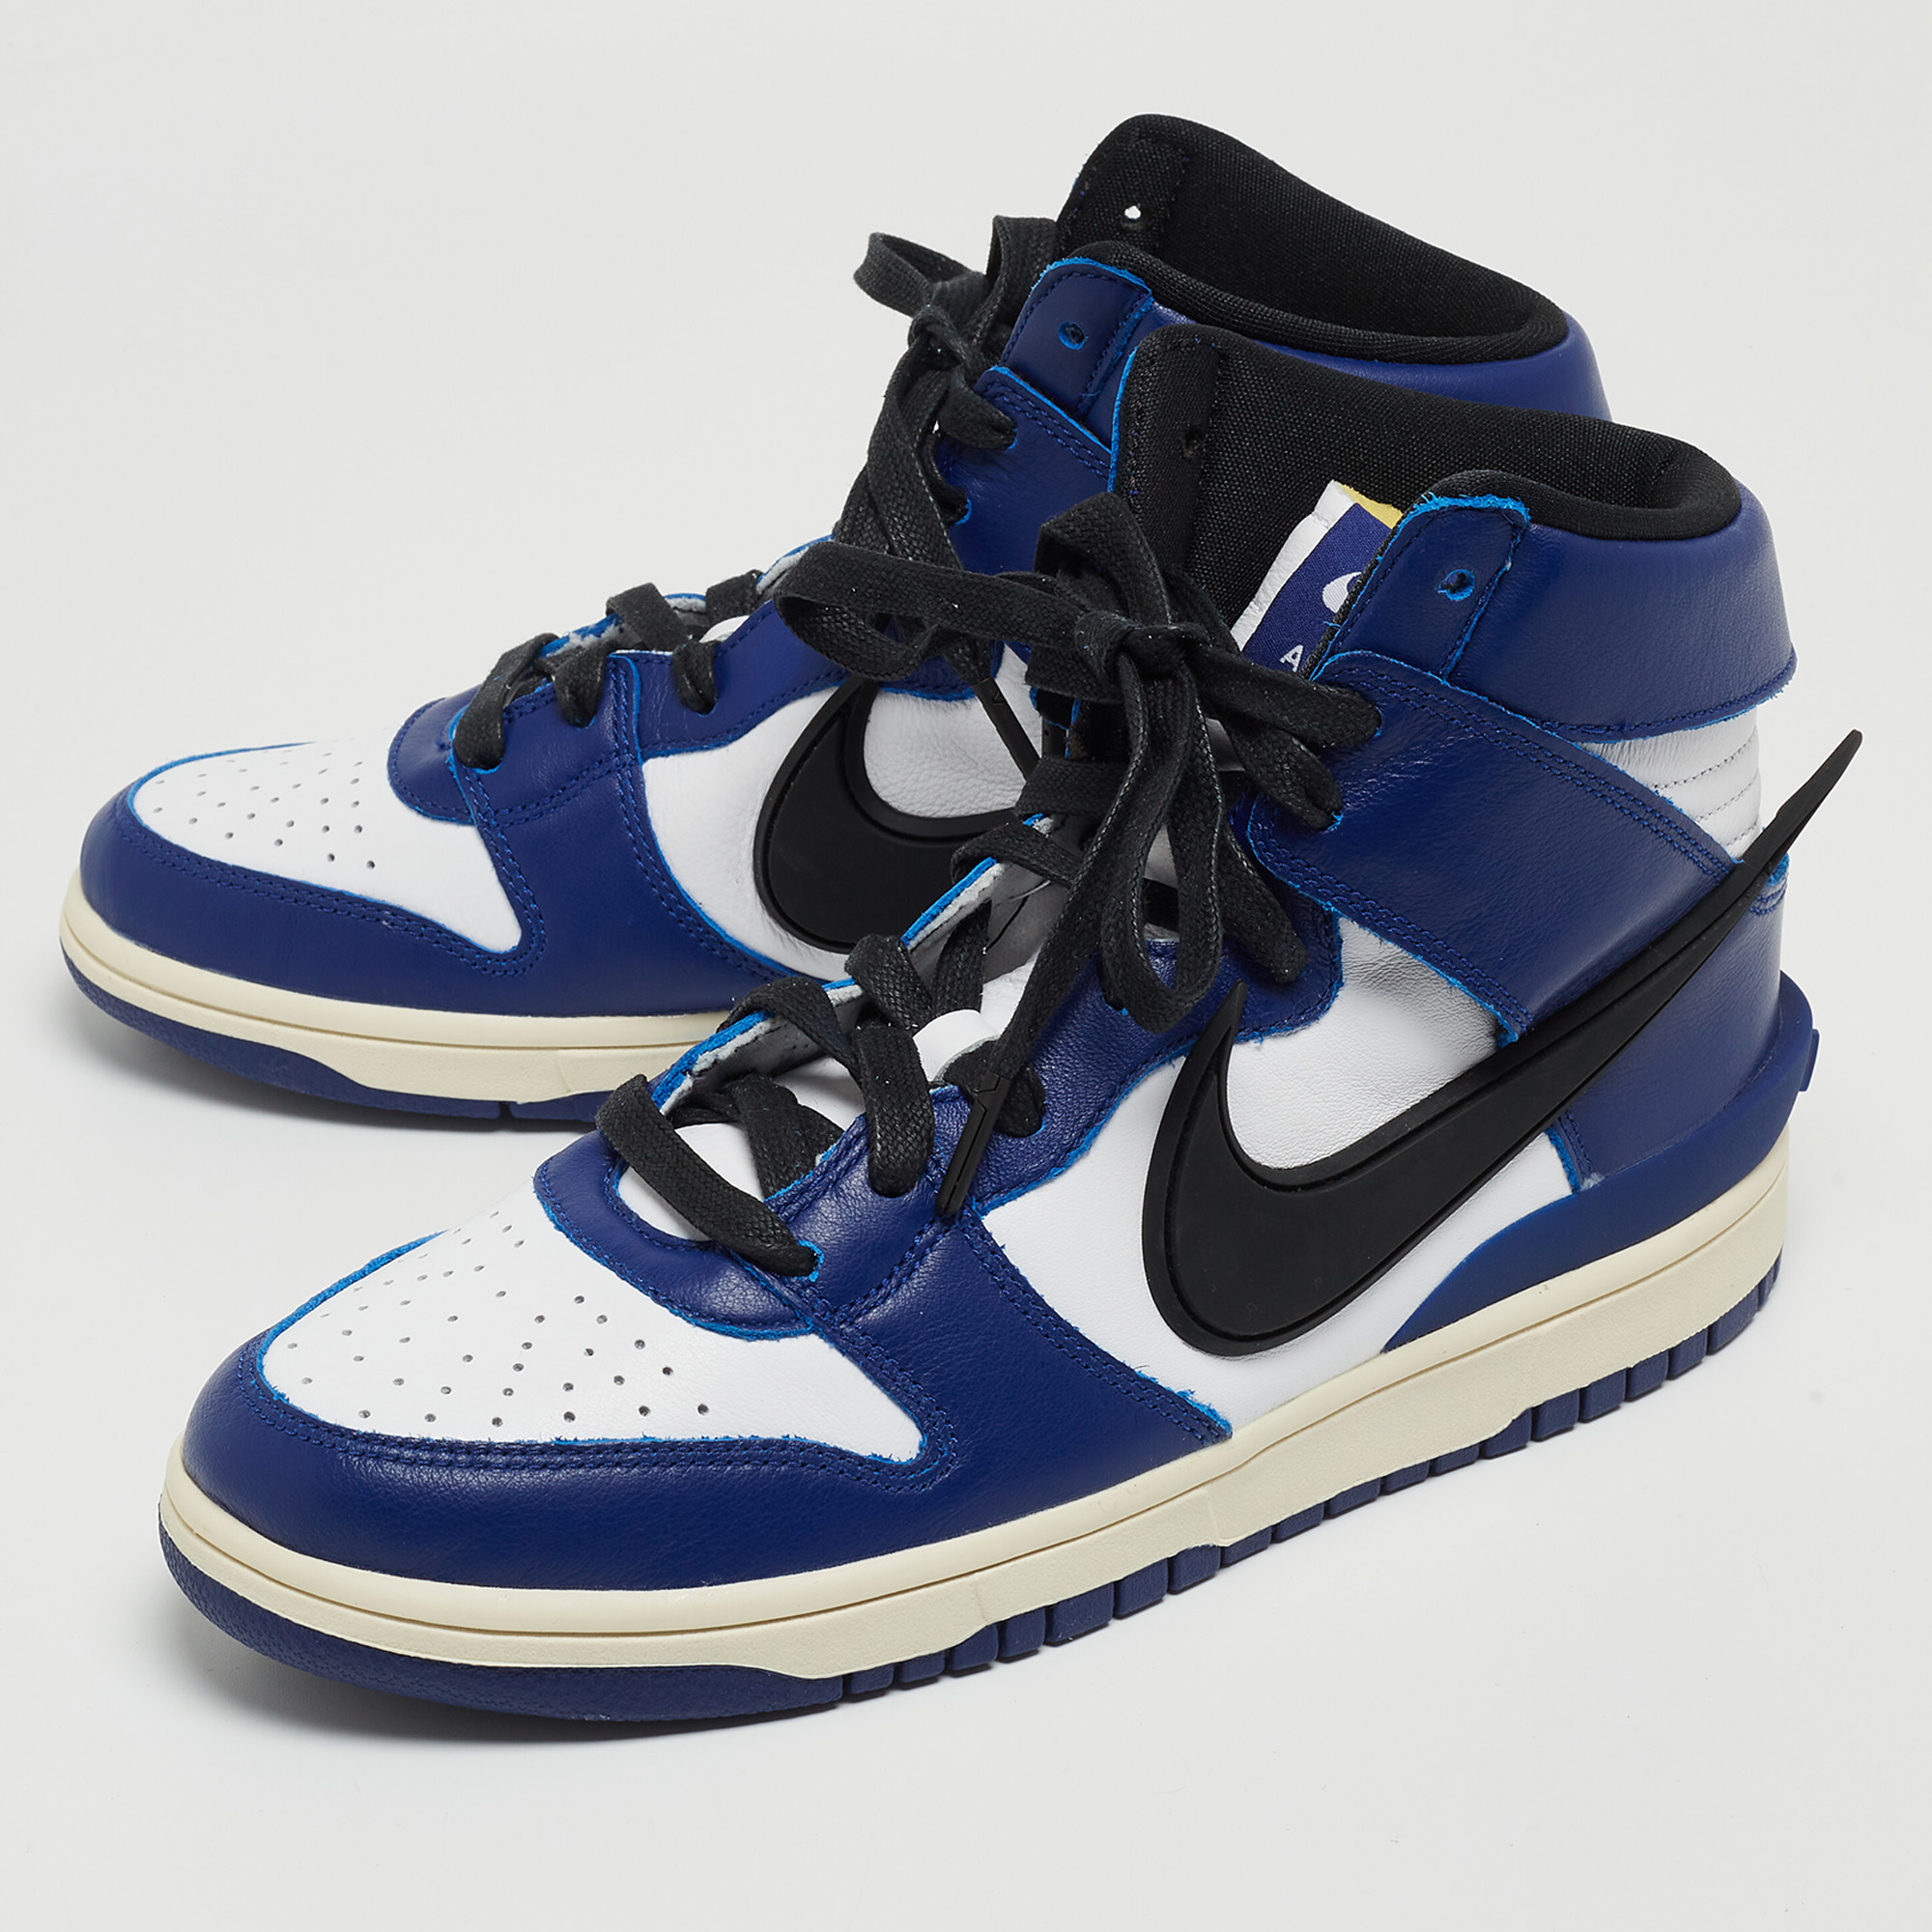 

Nike x Ambush Blue/White Leather Dunk High Deep Royal Sneakers Size